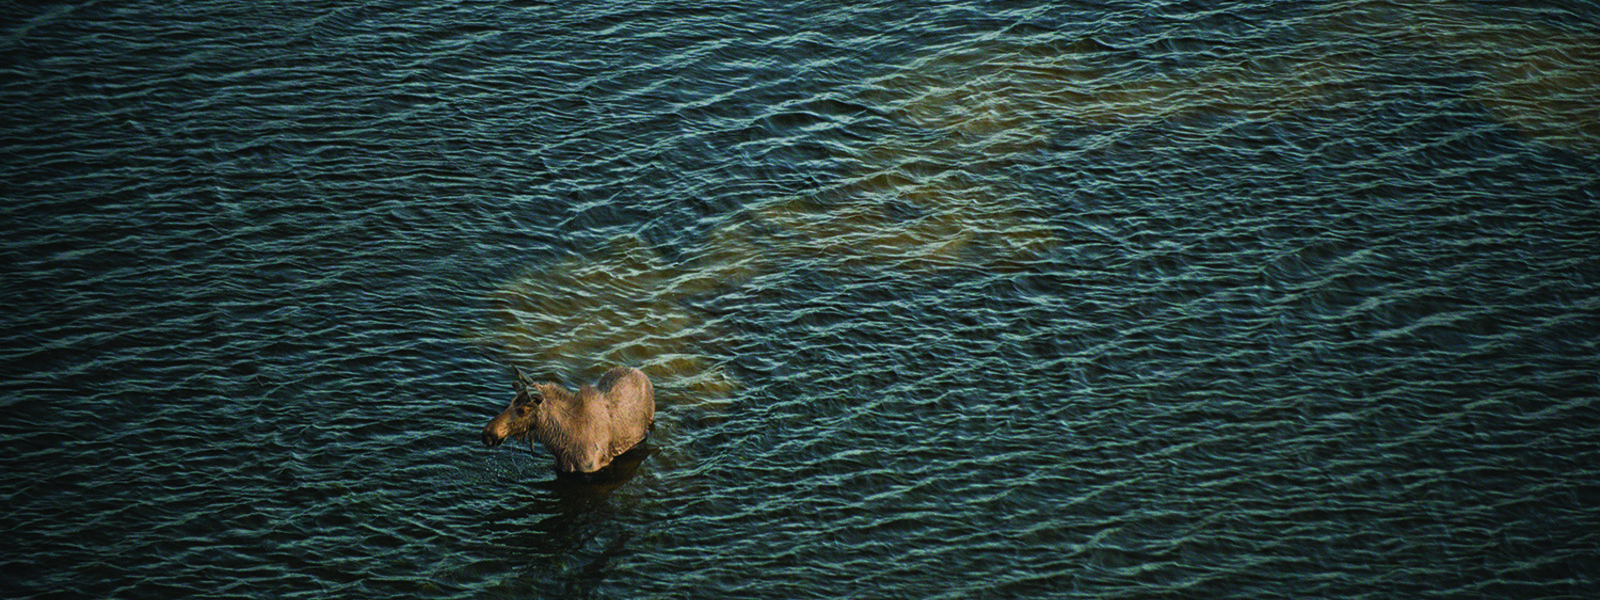 Moose wading through water